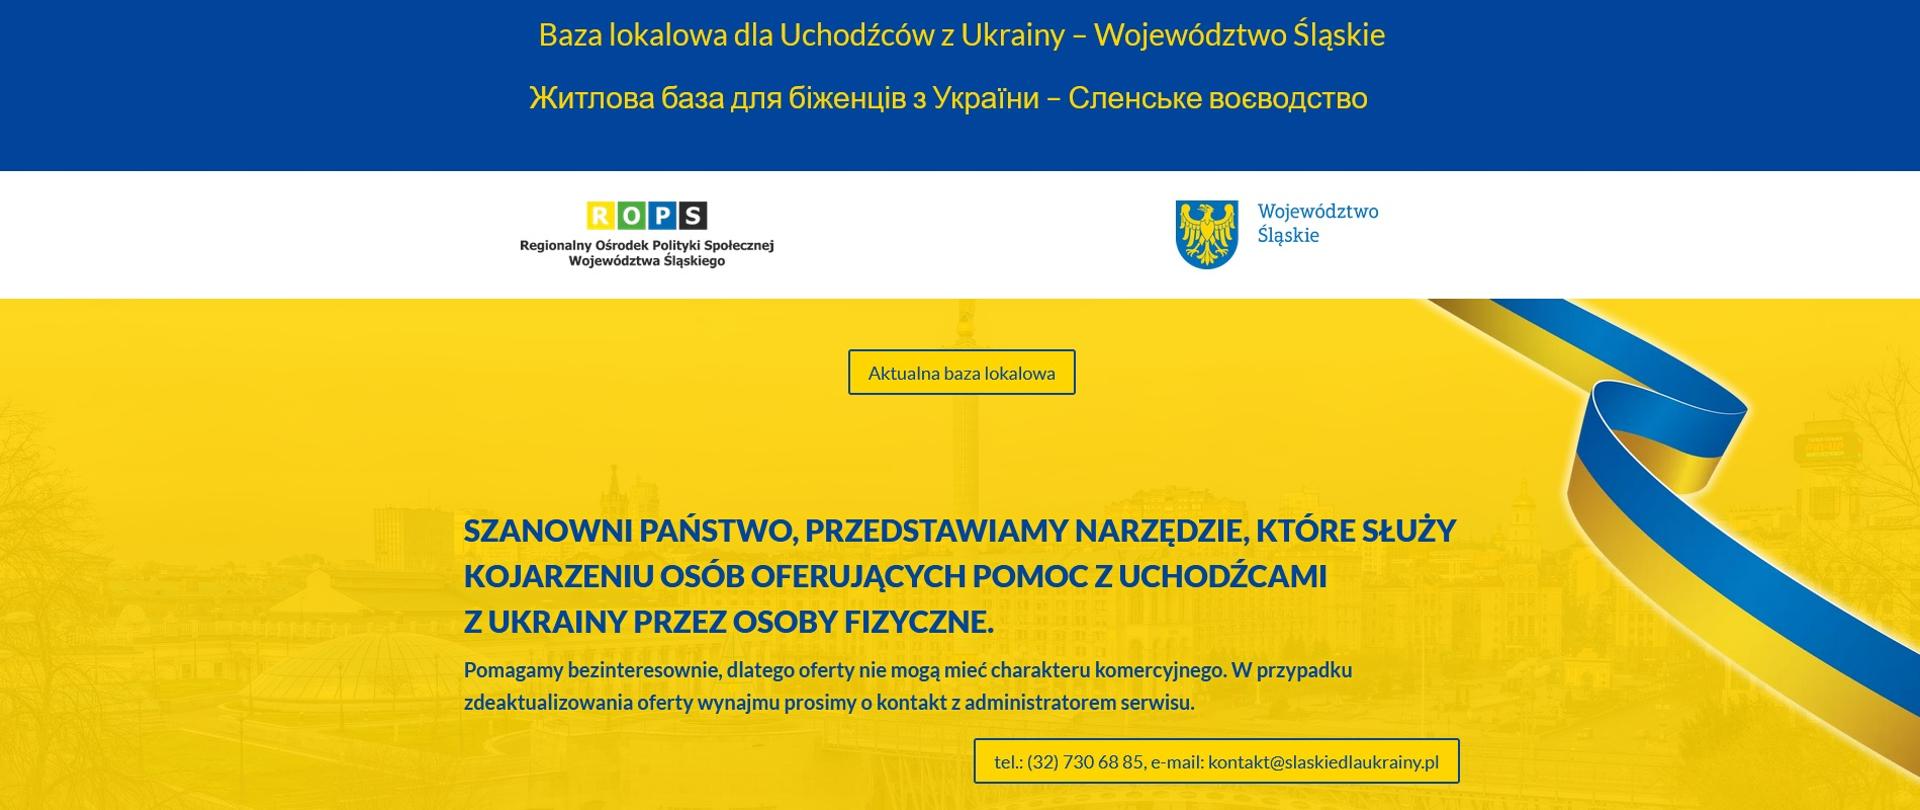 Śląskie dla Ukrainy - baza lokalowa dla uchodźców